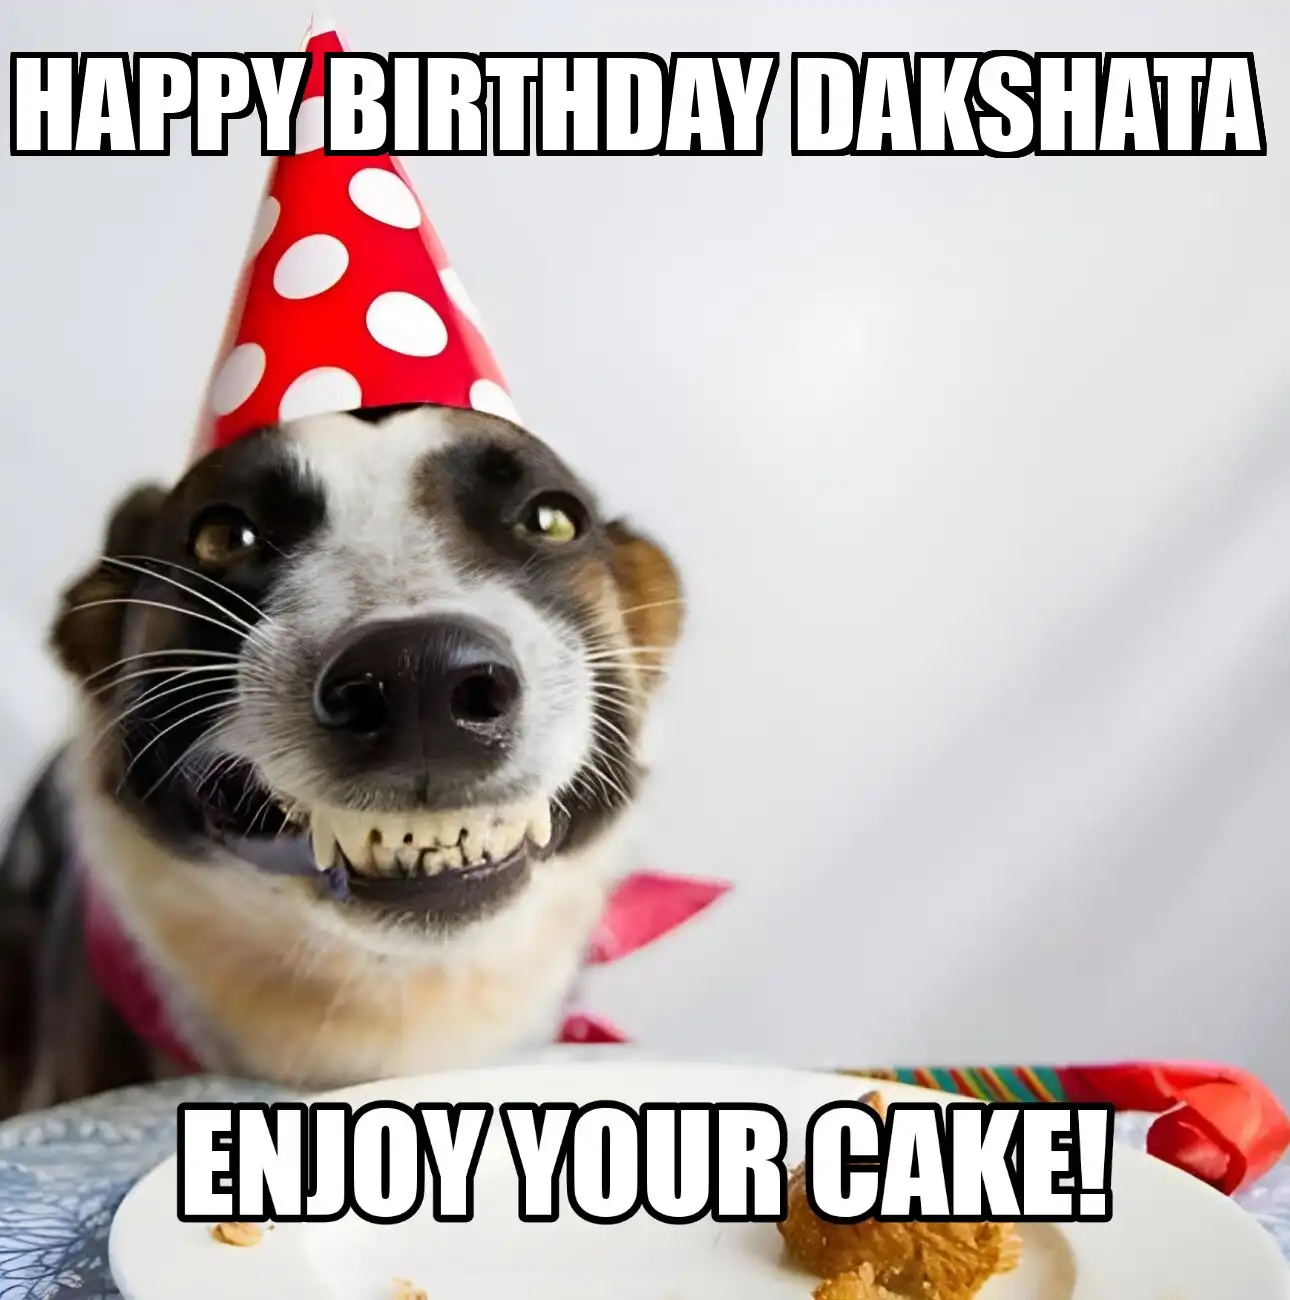 Happy Birthday Dakshata Enjoy Your Cake Dog Meme